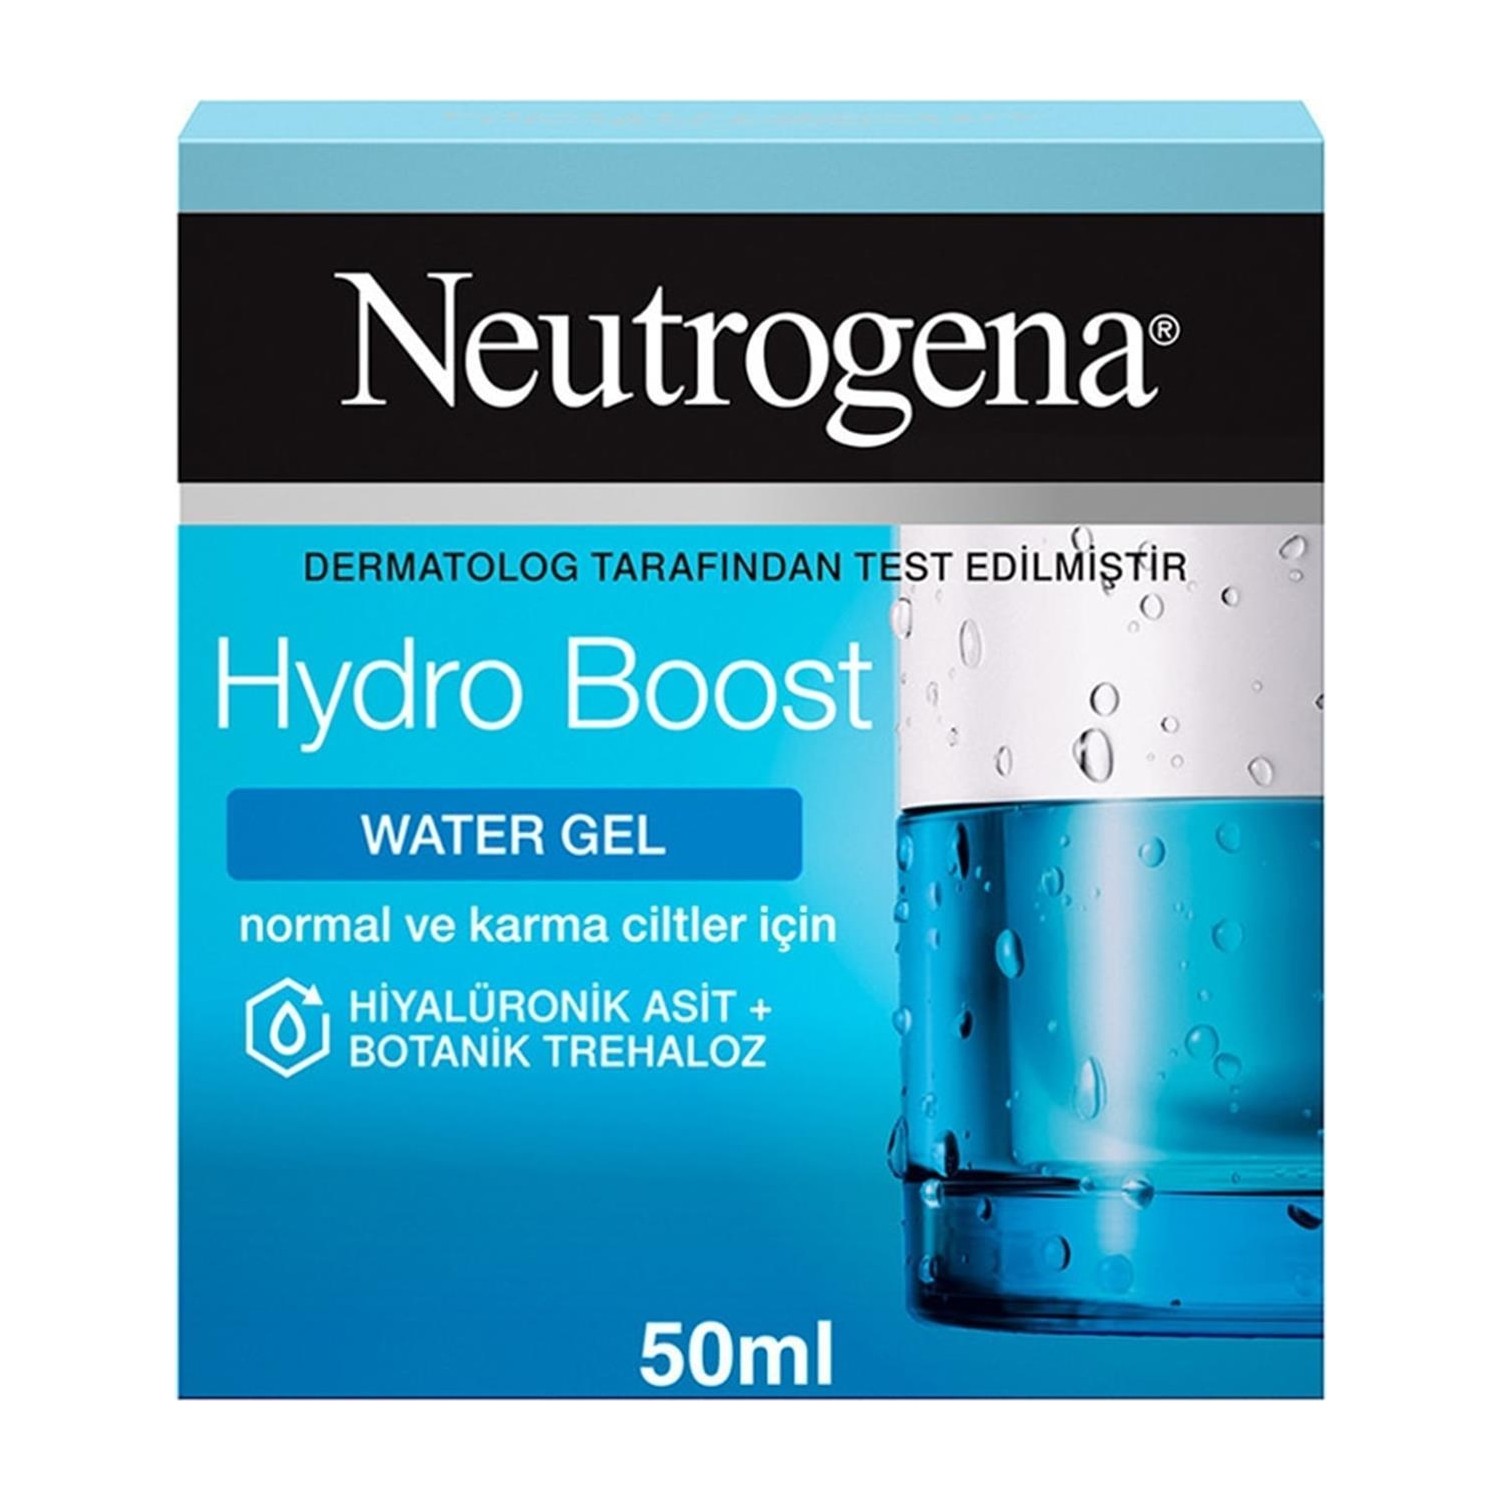 Гель увлажняющий Neutrogena Hydro Boost Water Gel для нормальной кожи, 50 мл крем увлажняющий neutrogena hydro boost water gel для нормальной кожи 2 упаковки по 50 мл